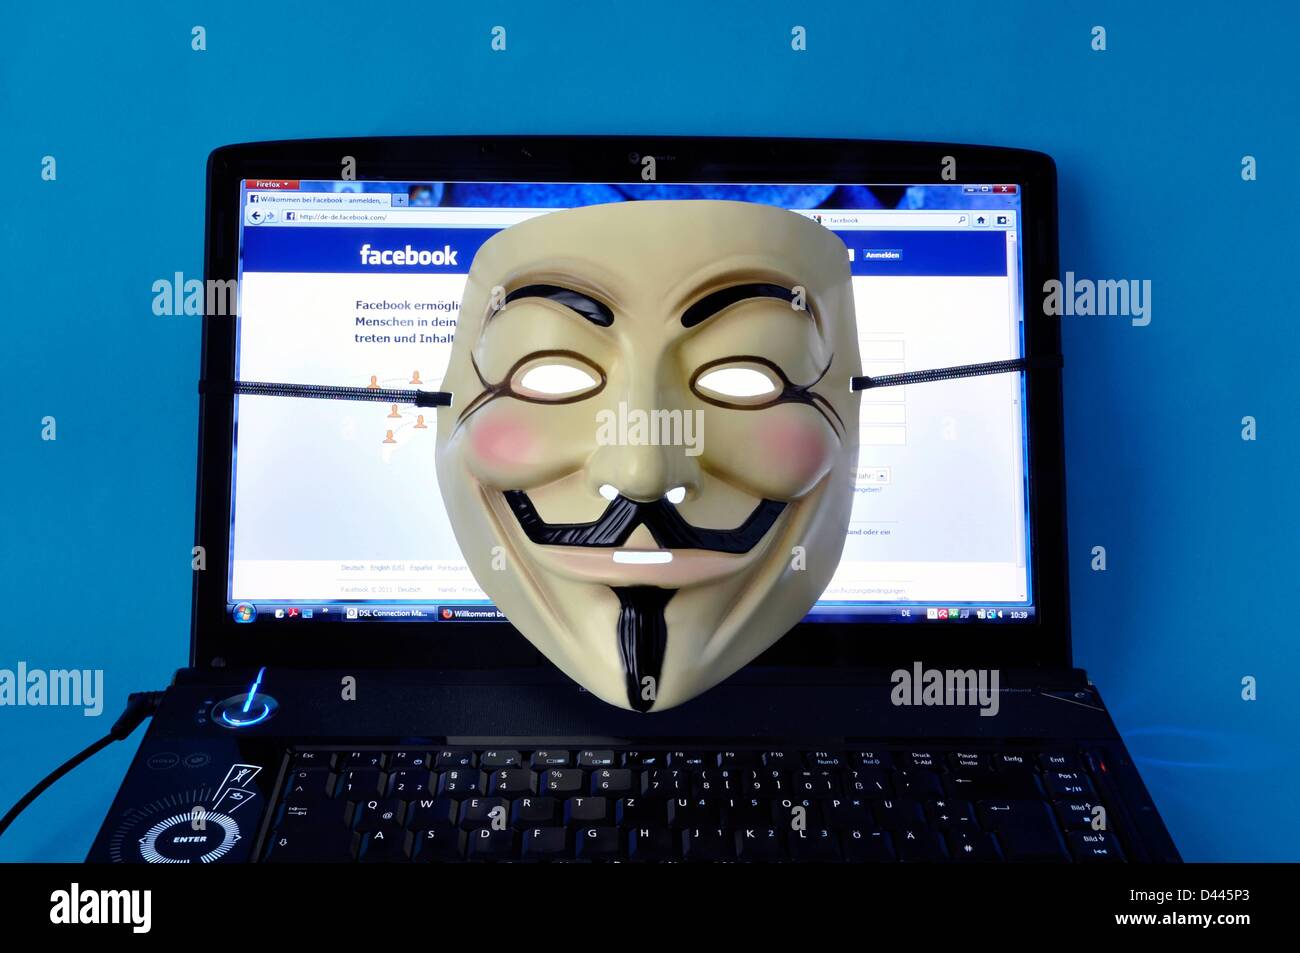 Un masque anonyme (également: Masque Guy Fawkes ou masque Vendetta) est représenté sur un ordinateur portable, qui affiche la page Internet Facebook en 2011. Fotoarchiv für ZeitgeschichteS.Steinach Banque D'Images